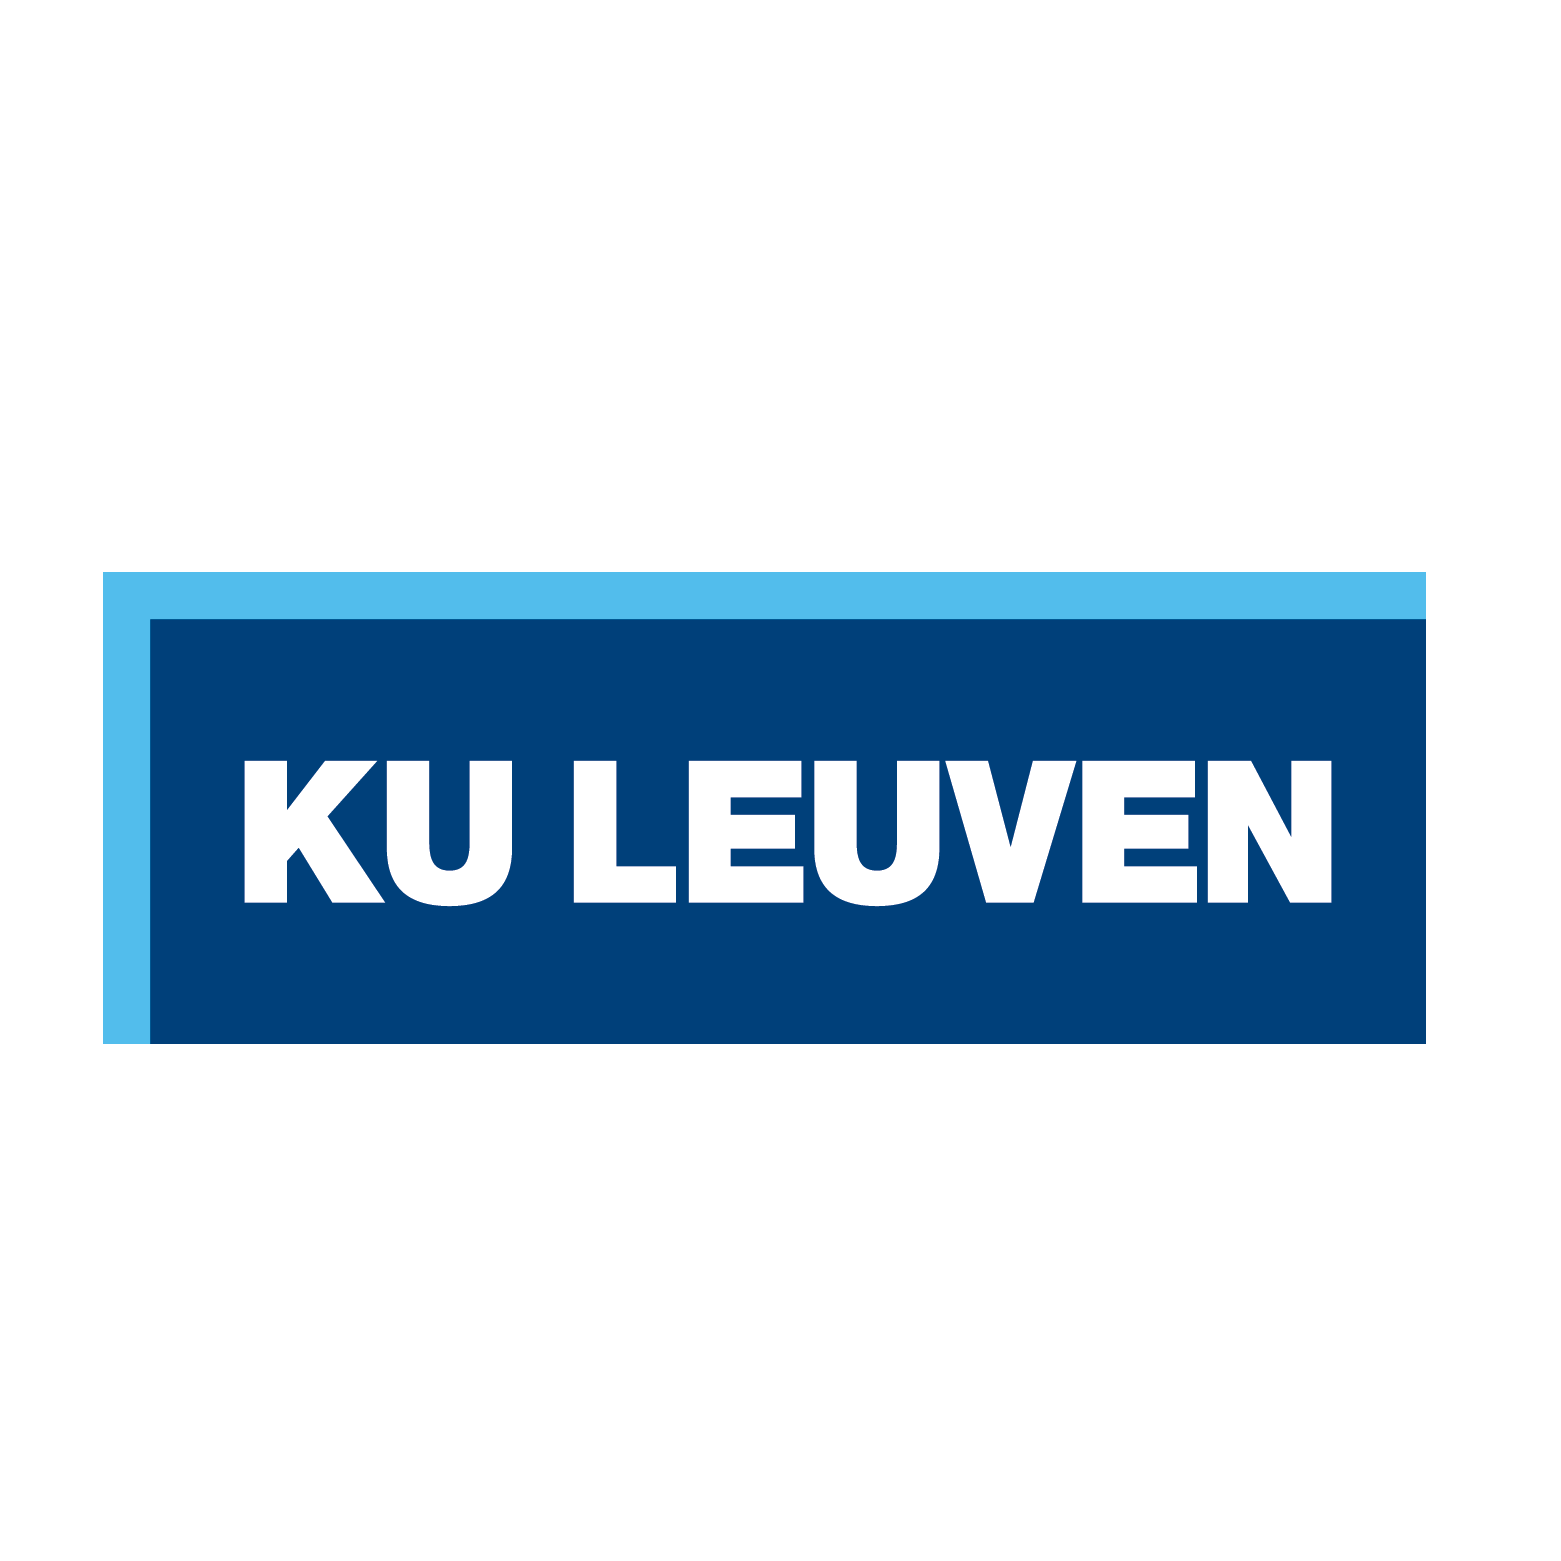 Avis d’appel à manifestation d’intérêt pour le Programme de bourses de doctorat KU Leuven Global Minds